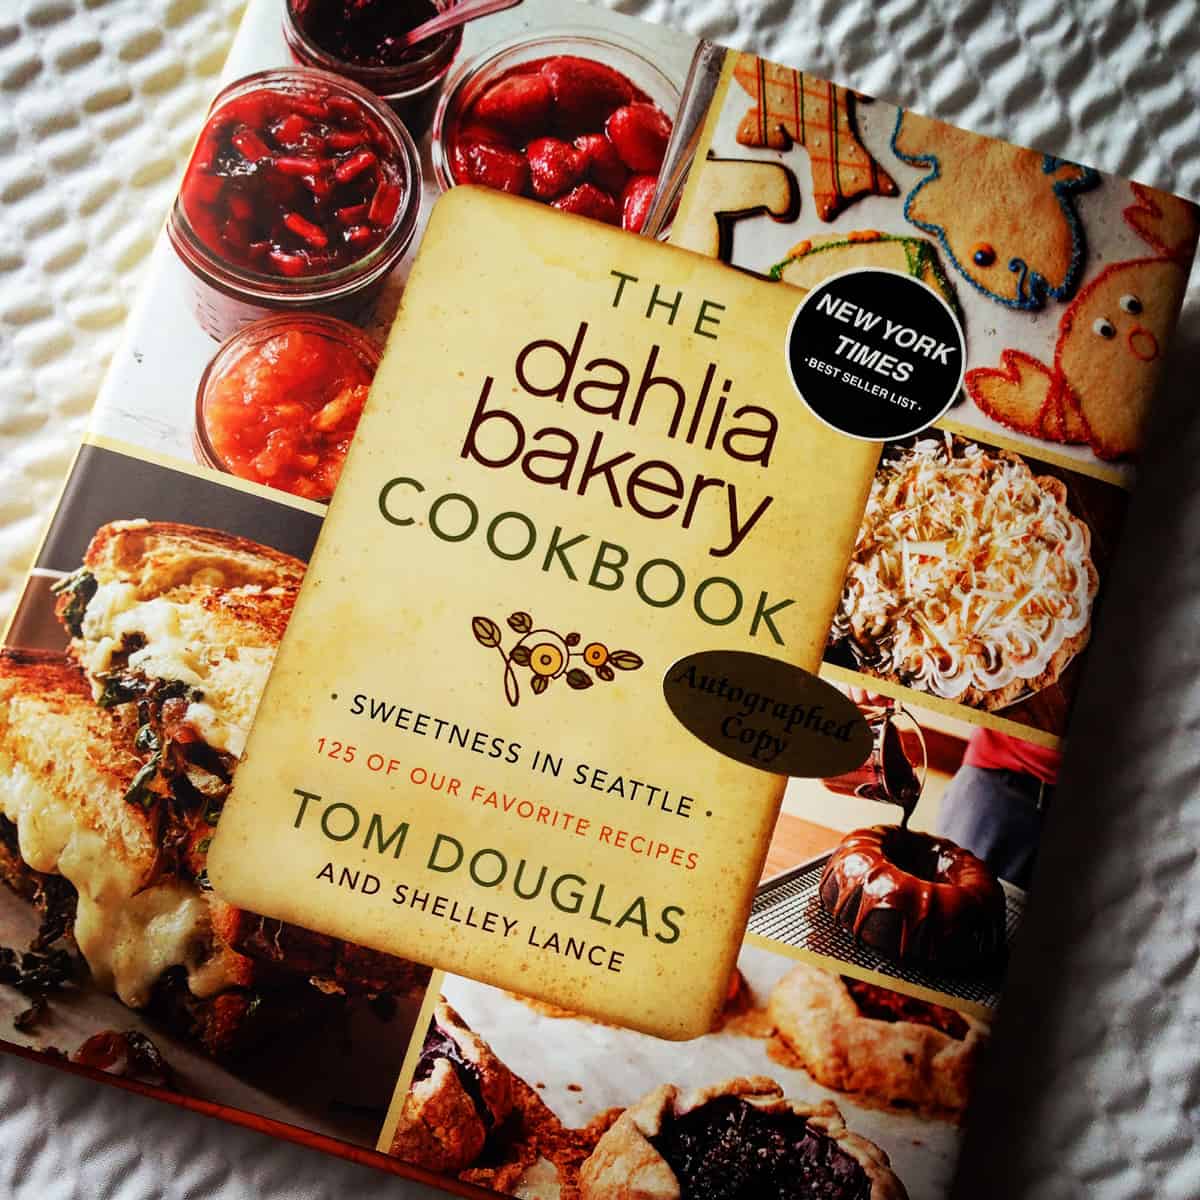 The Dahlia Bakery cookbook by Tom Douglas